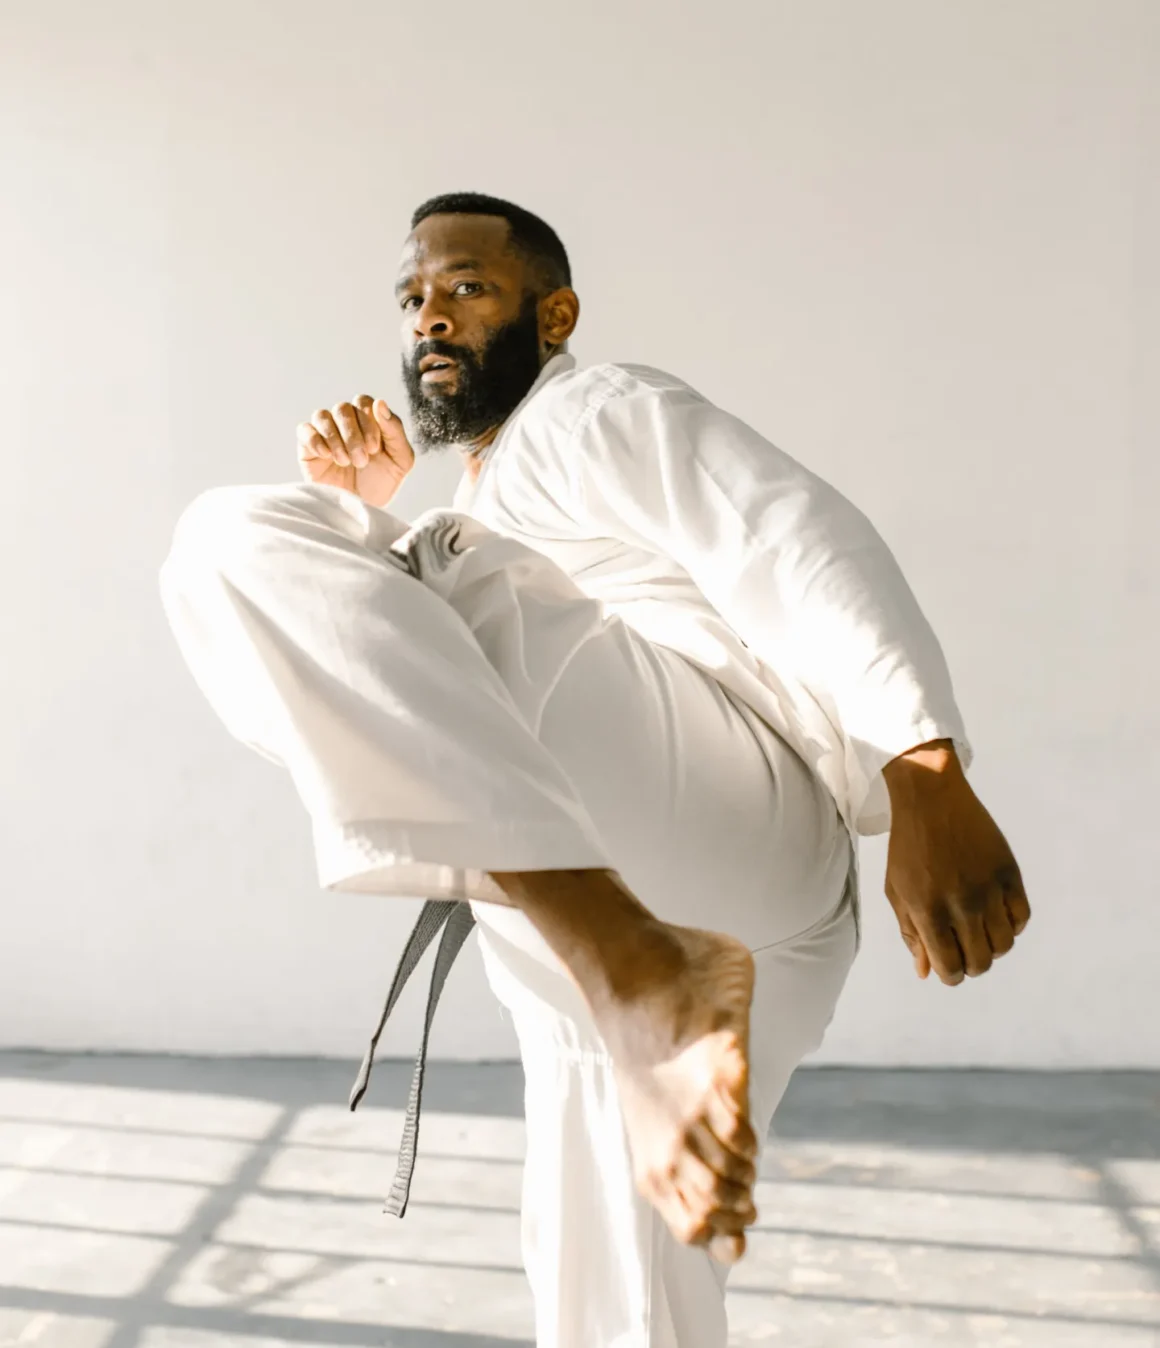 Mann trainiert einen Kick für die Verbesserung seiner Karate Grundtechniken